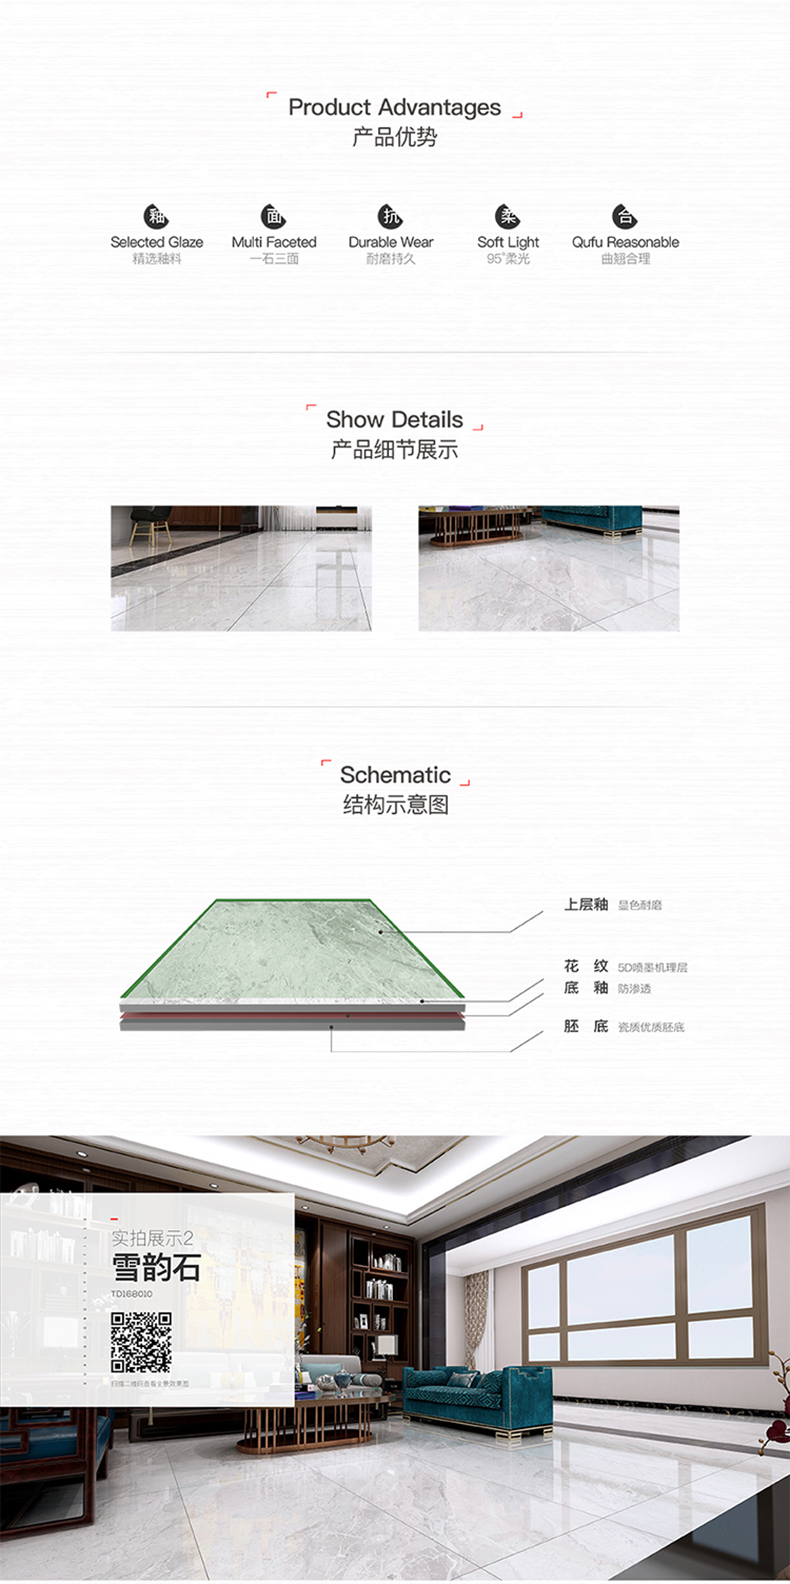 【雅柏丽】晶钢釉面大理石地板砖 TD168010(图2)